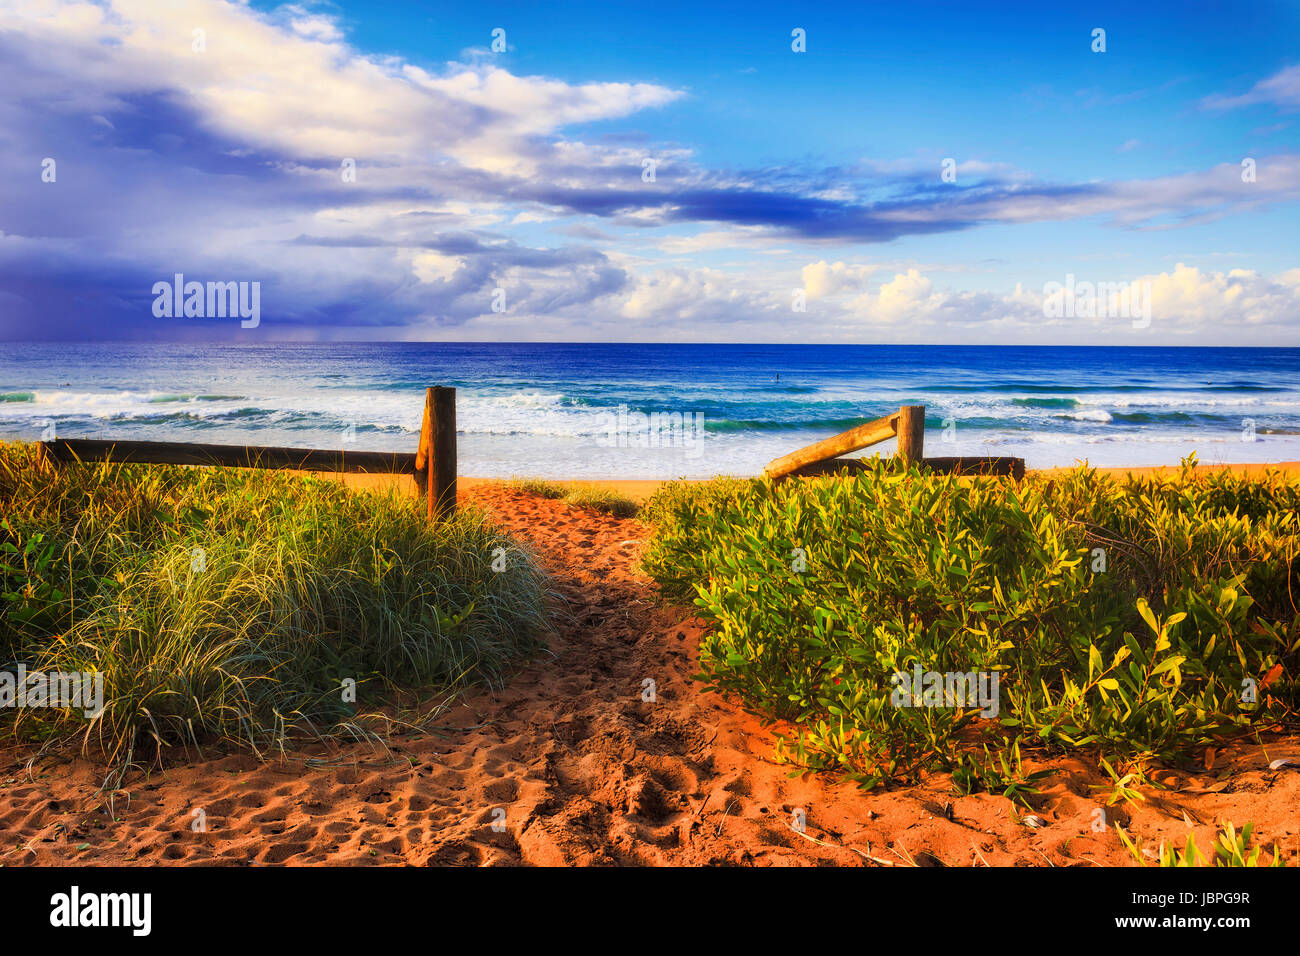 Exit les boiseries et l'entrée à la plage de sable de Bungan de Sydney sur la côte du Pacifique, lumineuse, ensoleillée matin avec active les surfeurs et les personnes fréquentant les plages côtières bénéficiant Banque D'Images